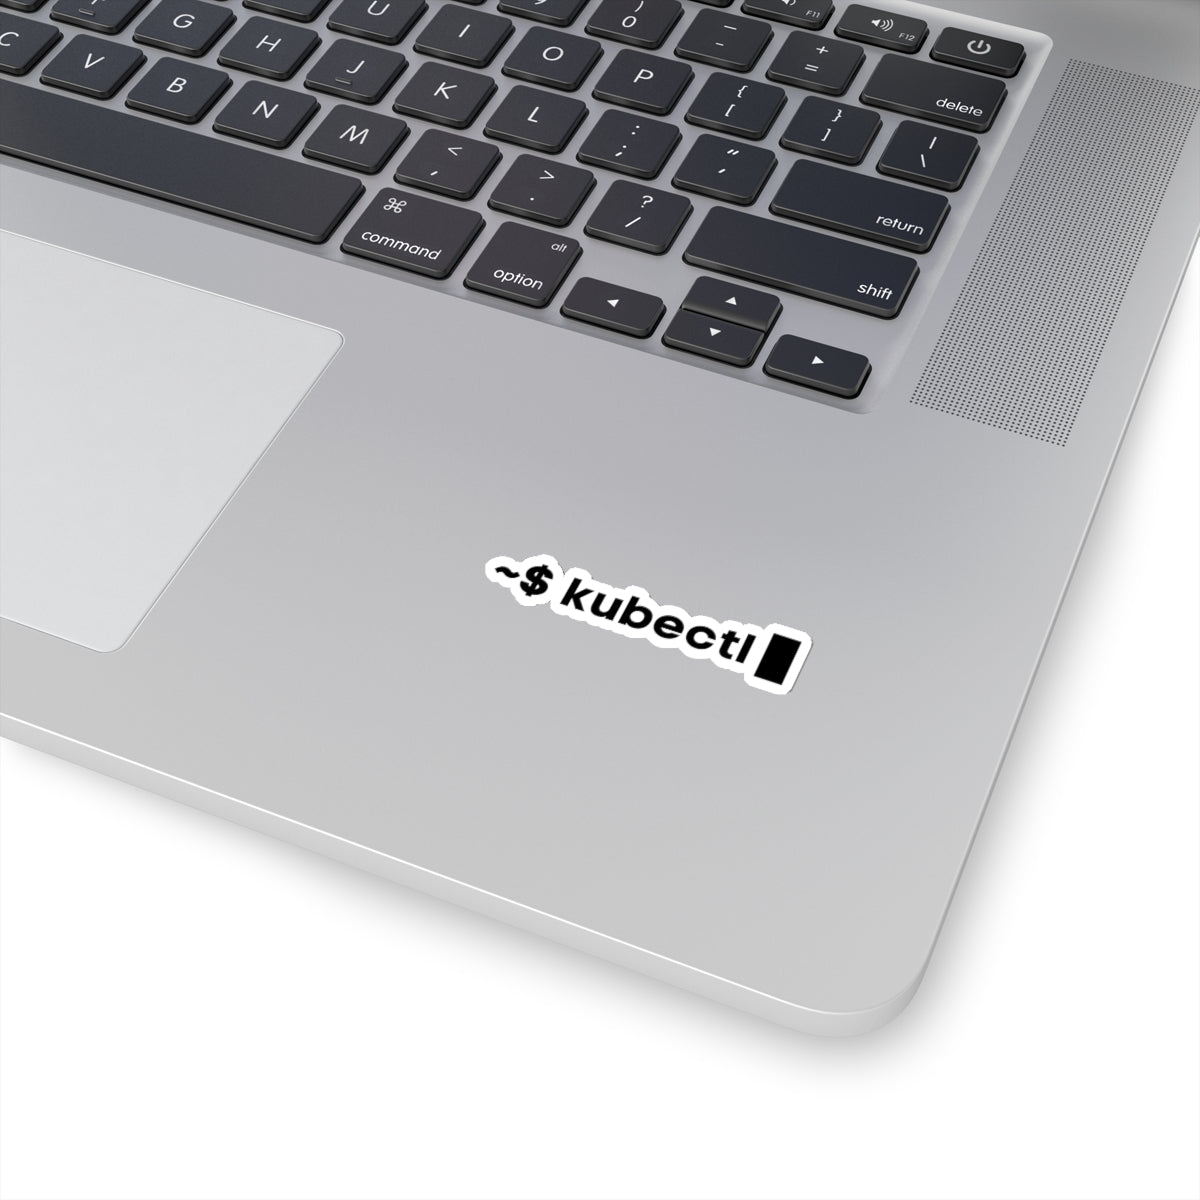 Kubectl - Developer / Programmer / Software Engineer Kiss Cut Sticker